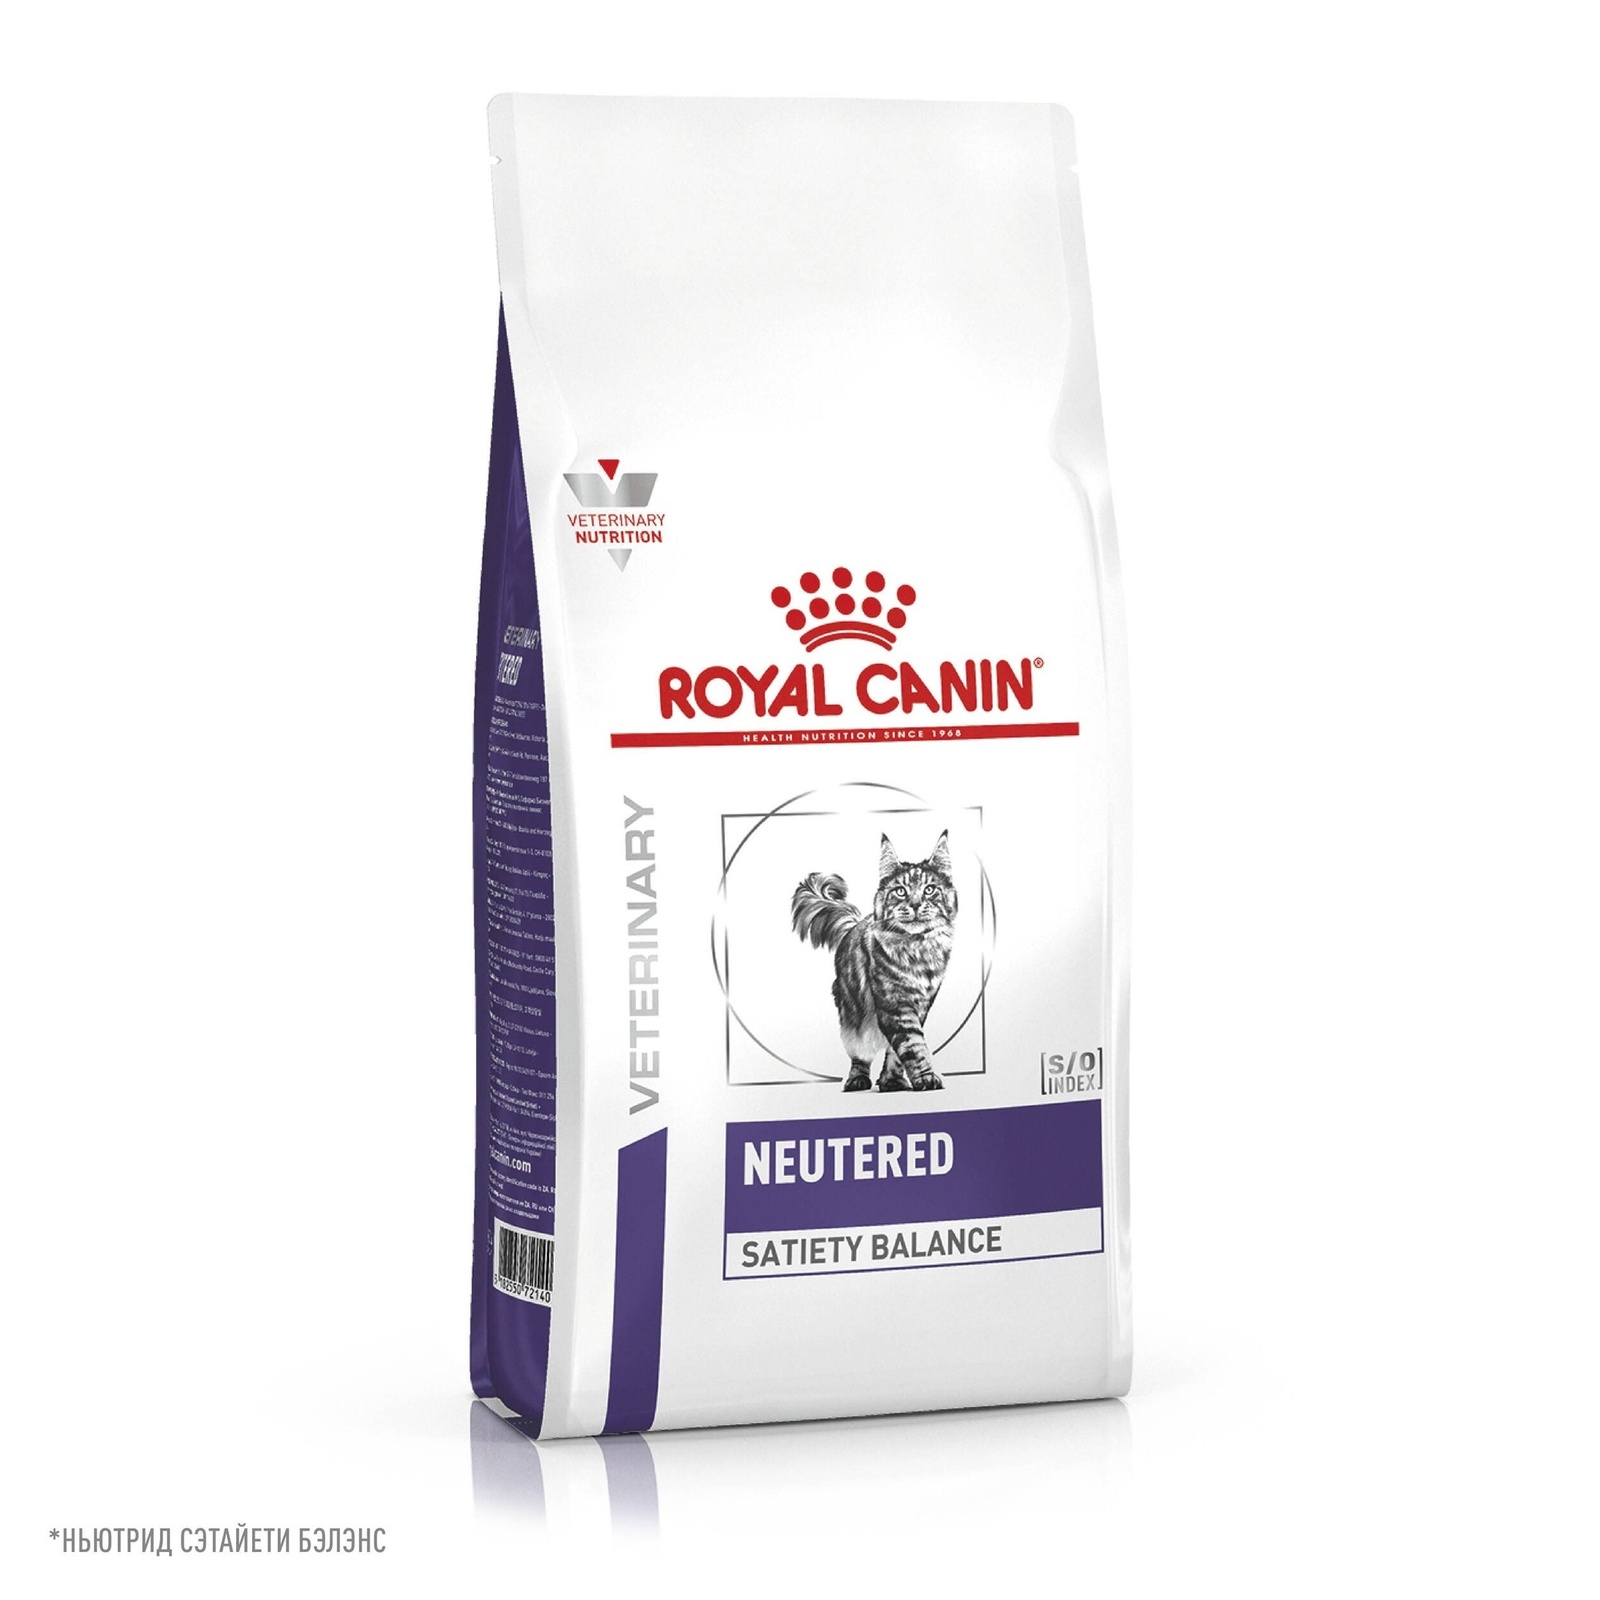 Royal Canin (вет.корма) Royal Canin (вет.корма) для кастрированных котов и кошек, с пониженной калорийностью для профилактики МКБ (1,5 кг)